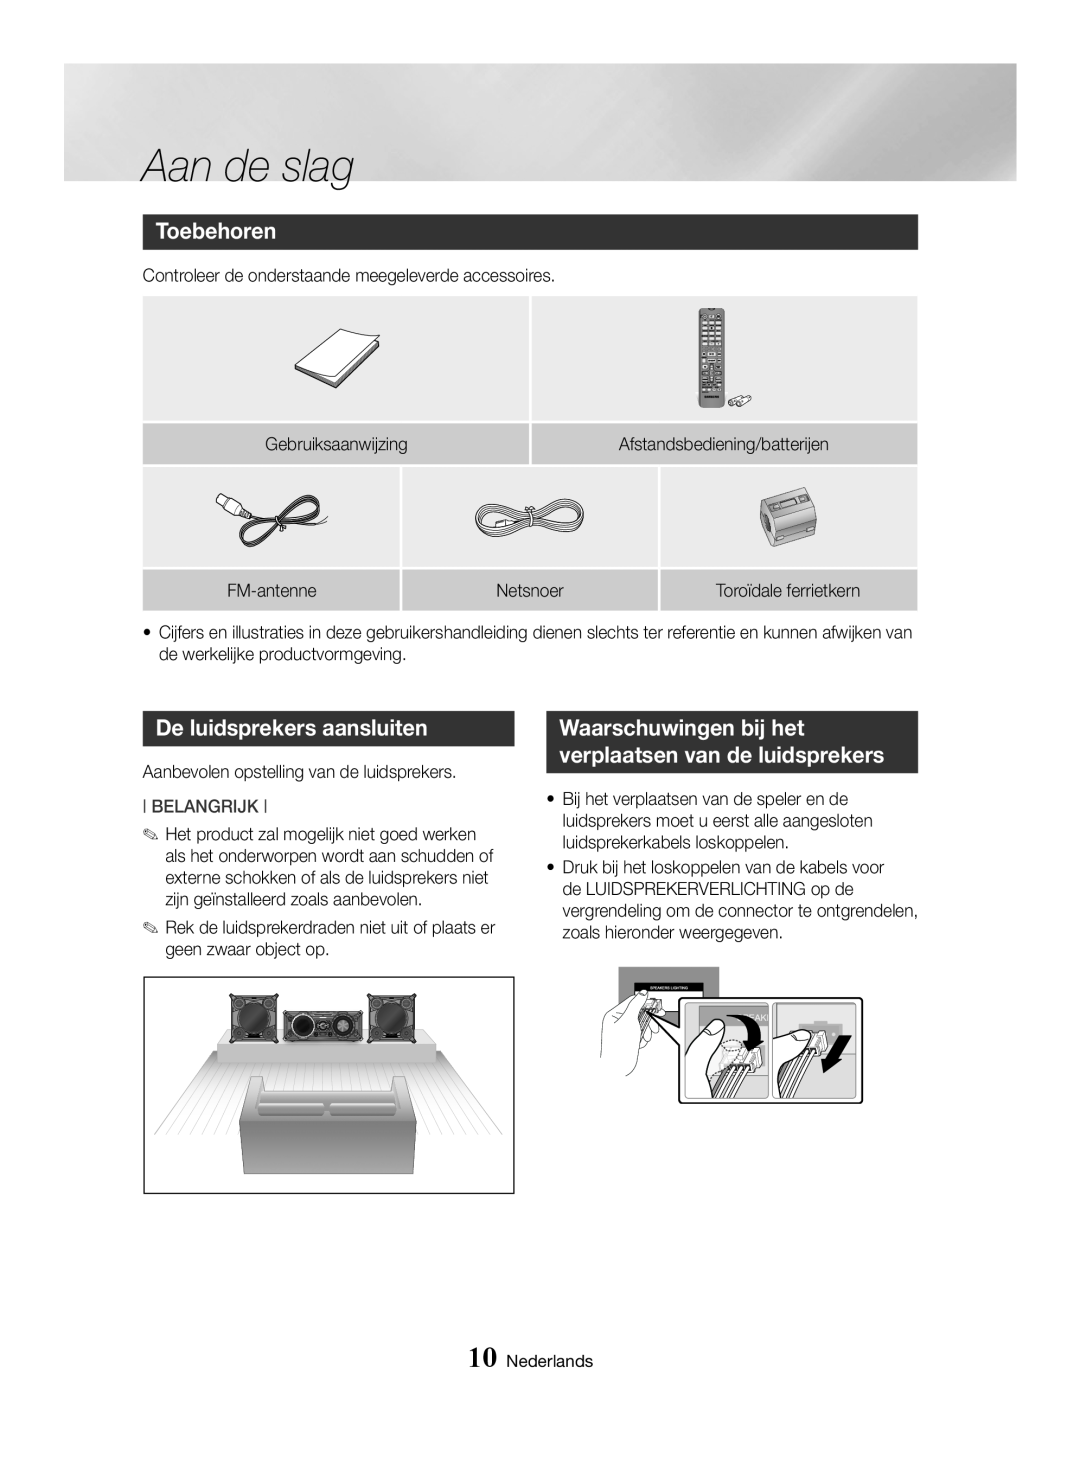 Samsung MX-HS8000/EN manual Toebehoren, De luidsprekers aansluiten, Waarschuwingen bij het verplaatsen van de luidsprekers 